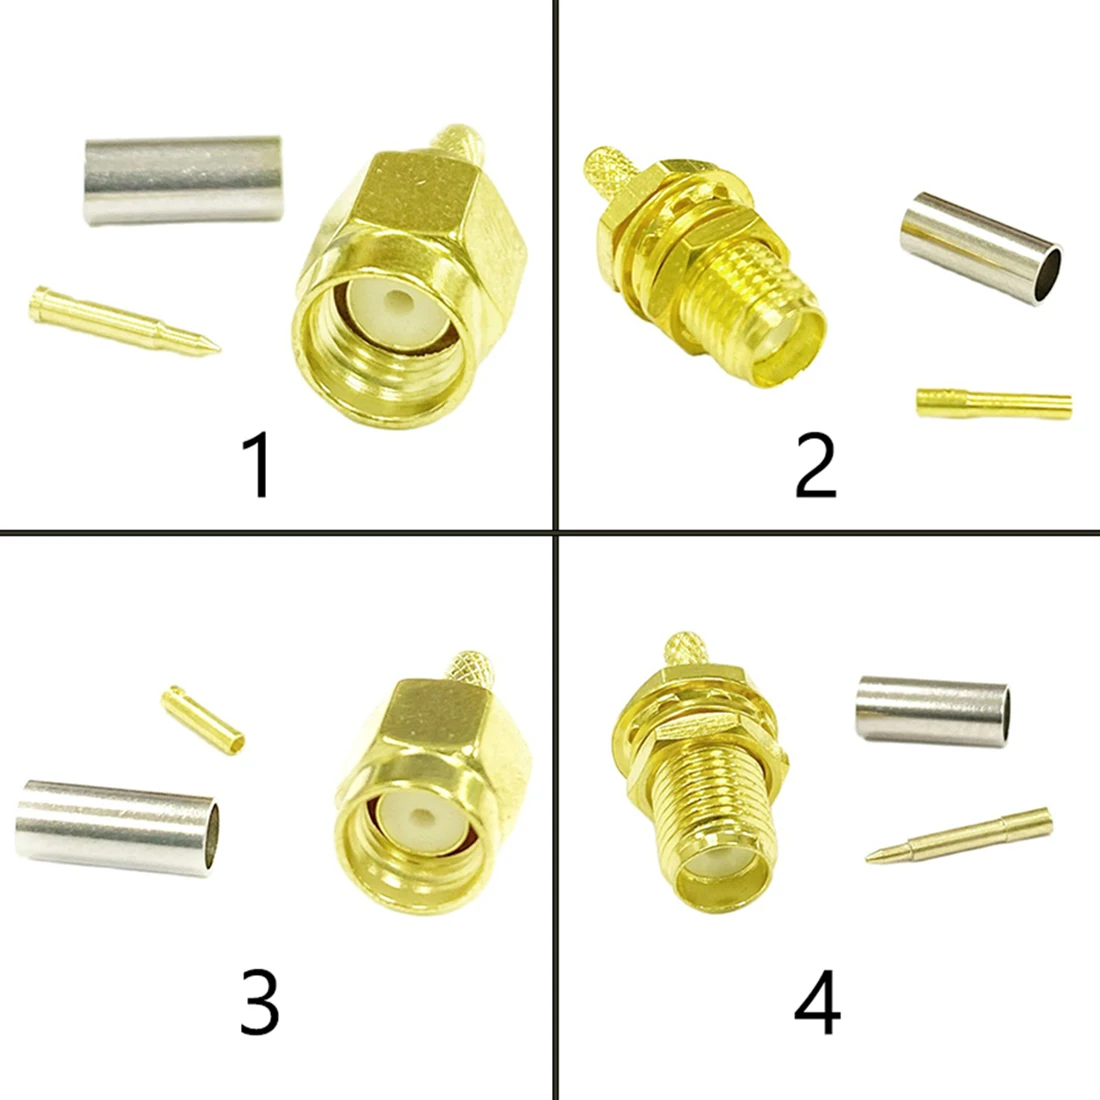 connecteur-coaxial-jack-rp-rf-femelle-sma-a-sertir-pour-cable-lmr100-rg174-rg316-adaptateur-droit-plaque-or-1-a-10-pieces